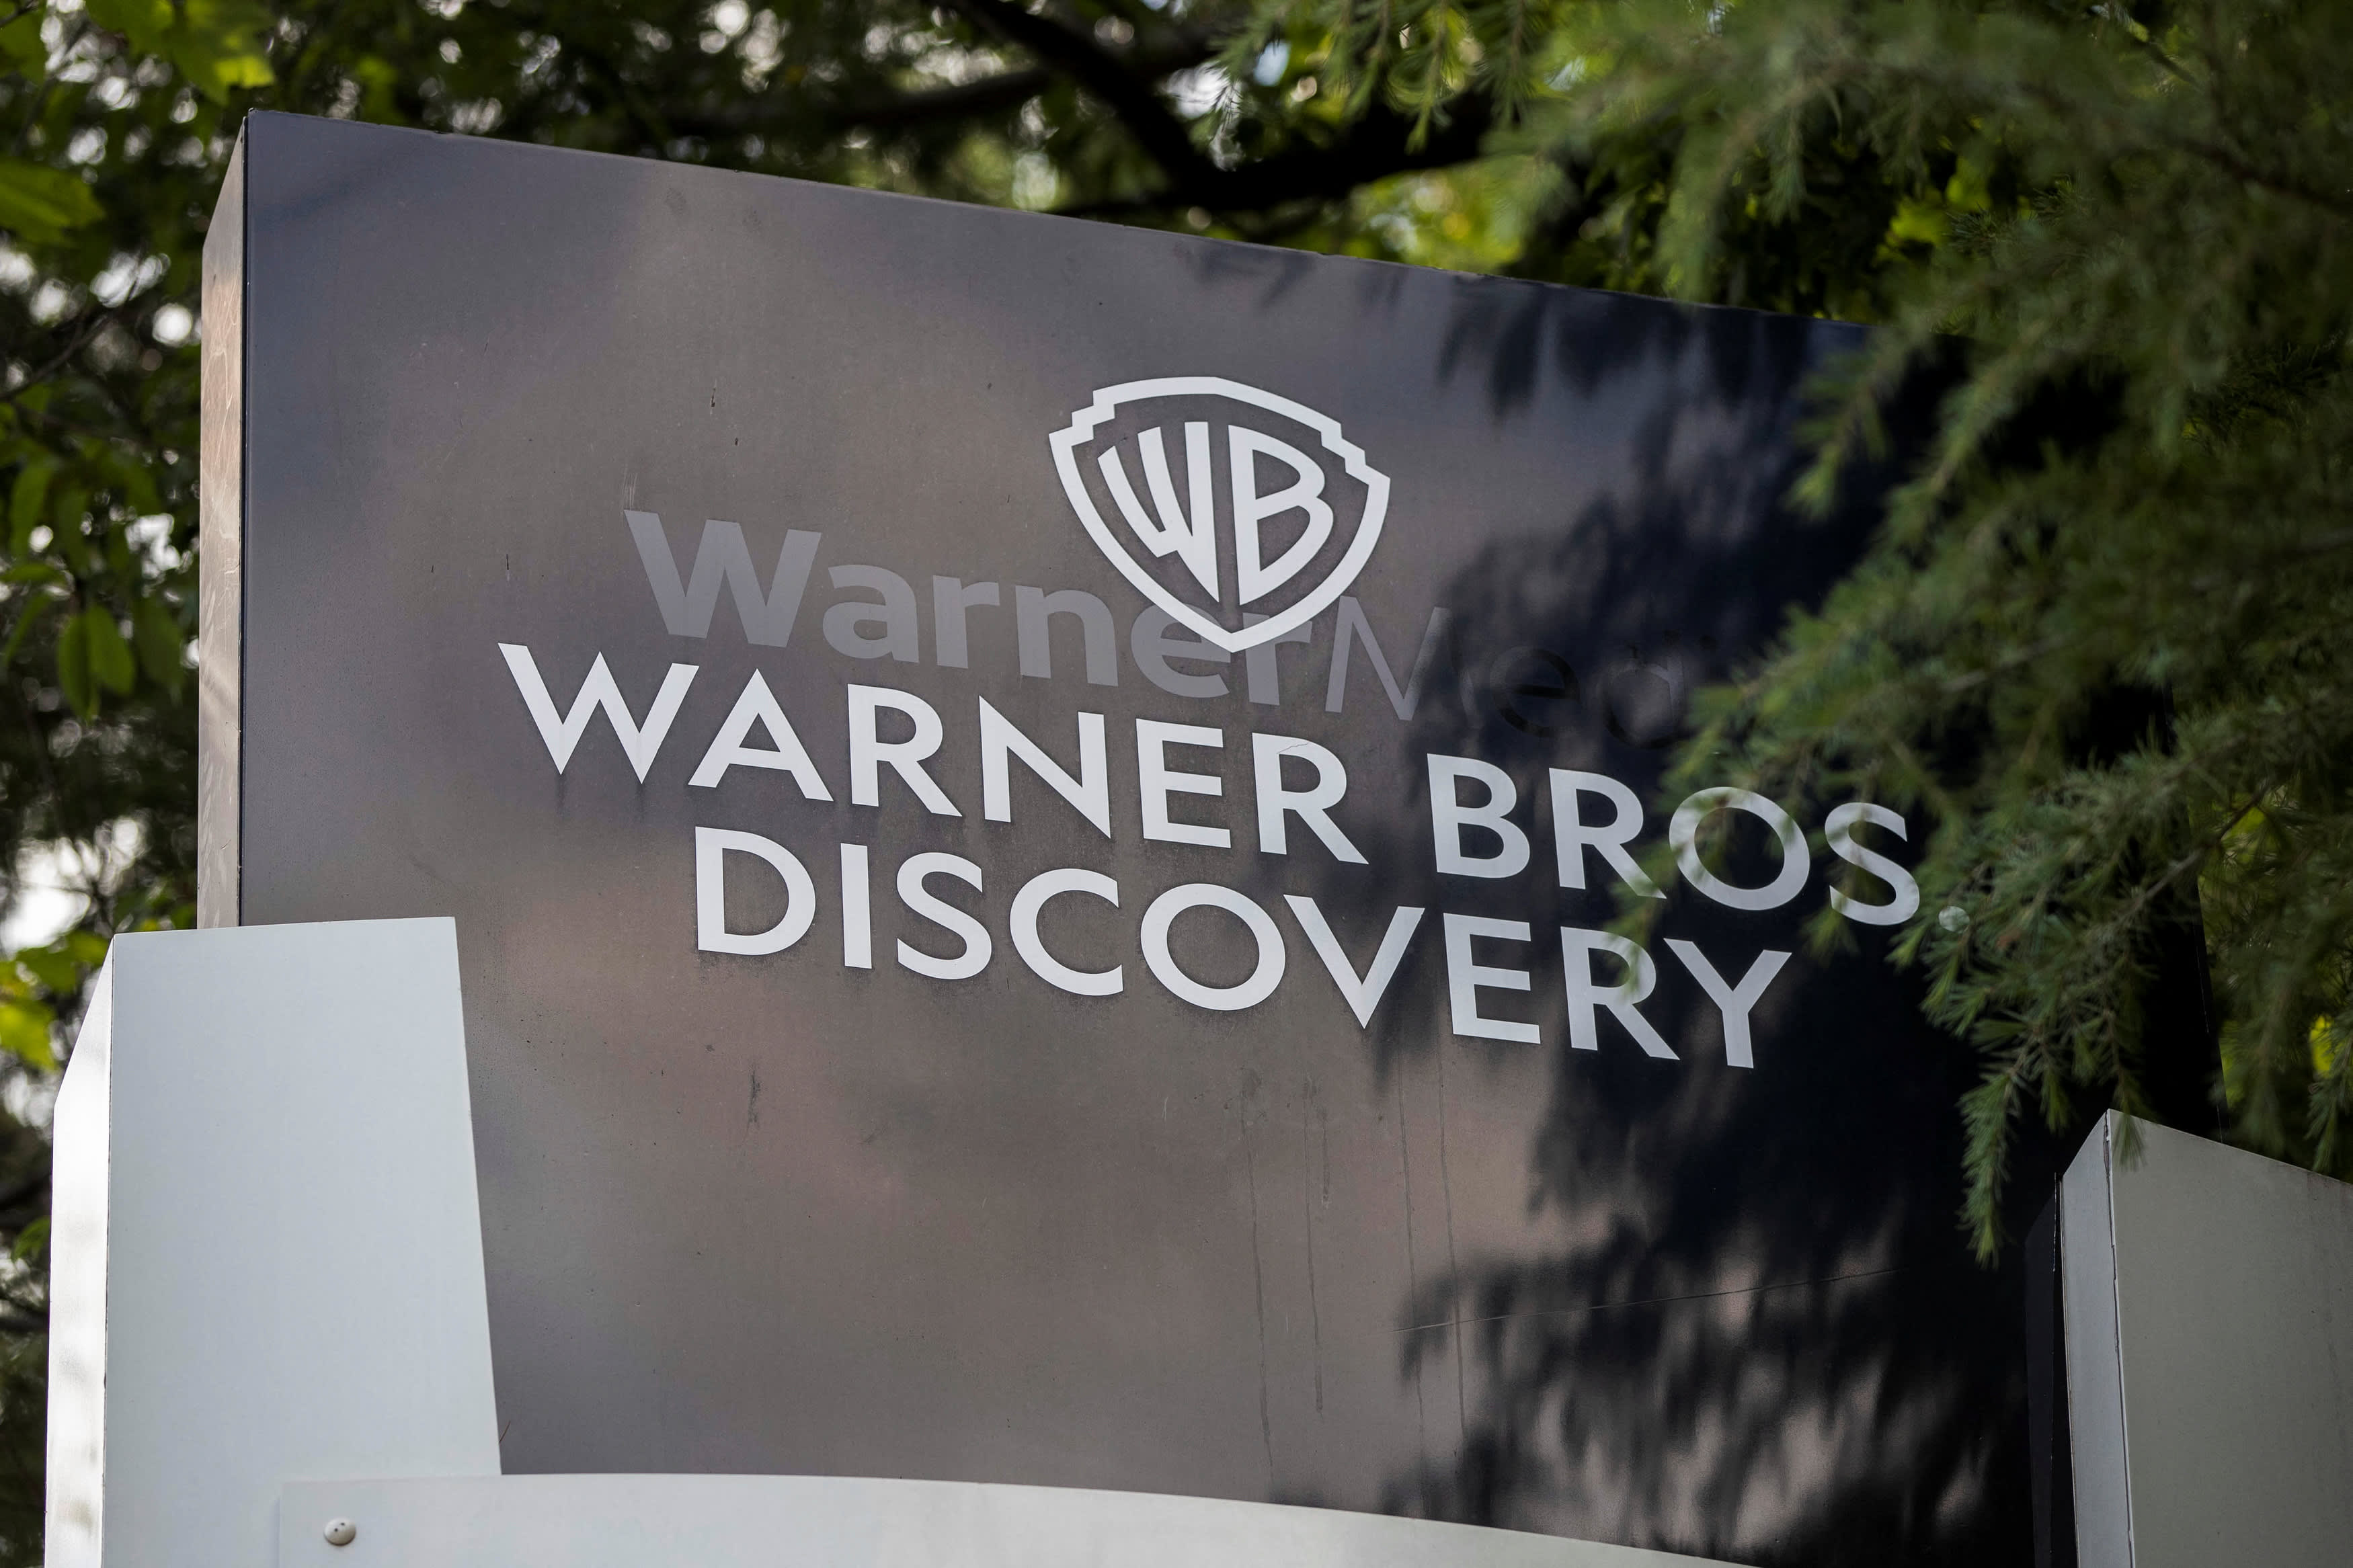 Lucros da Warner Bros.  Descoberta (WBD) para o quarto trimestre de 2023